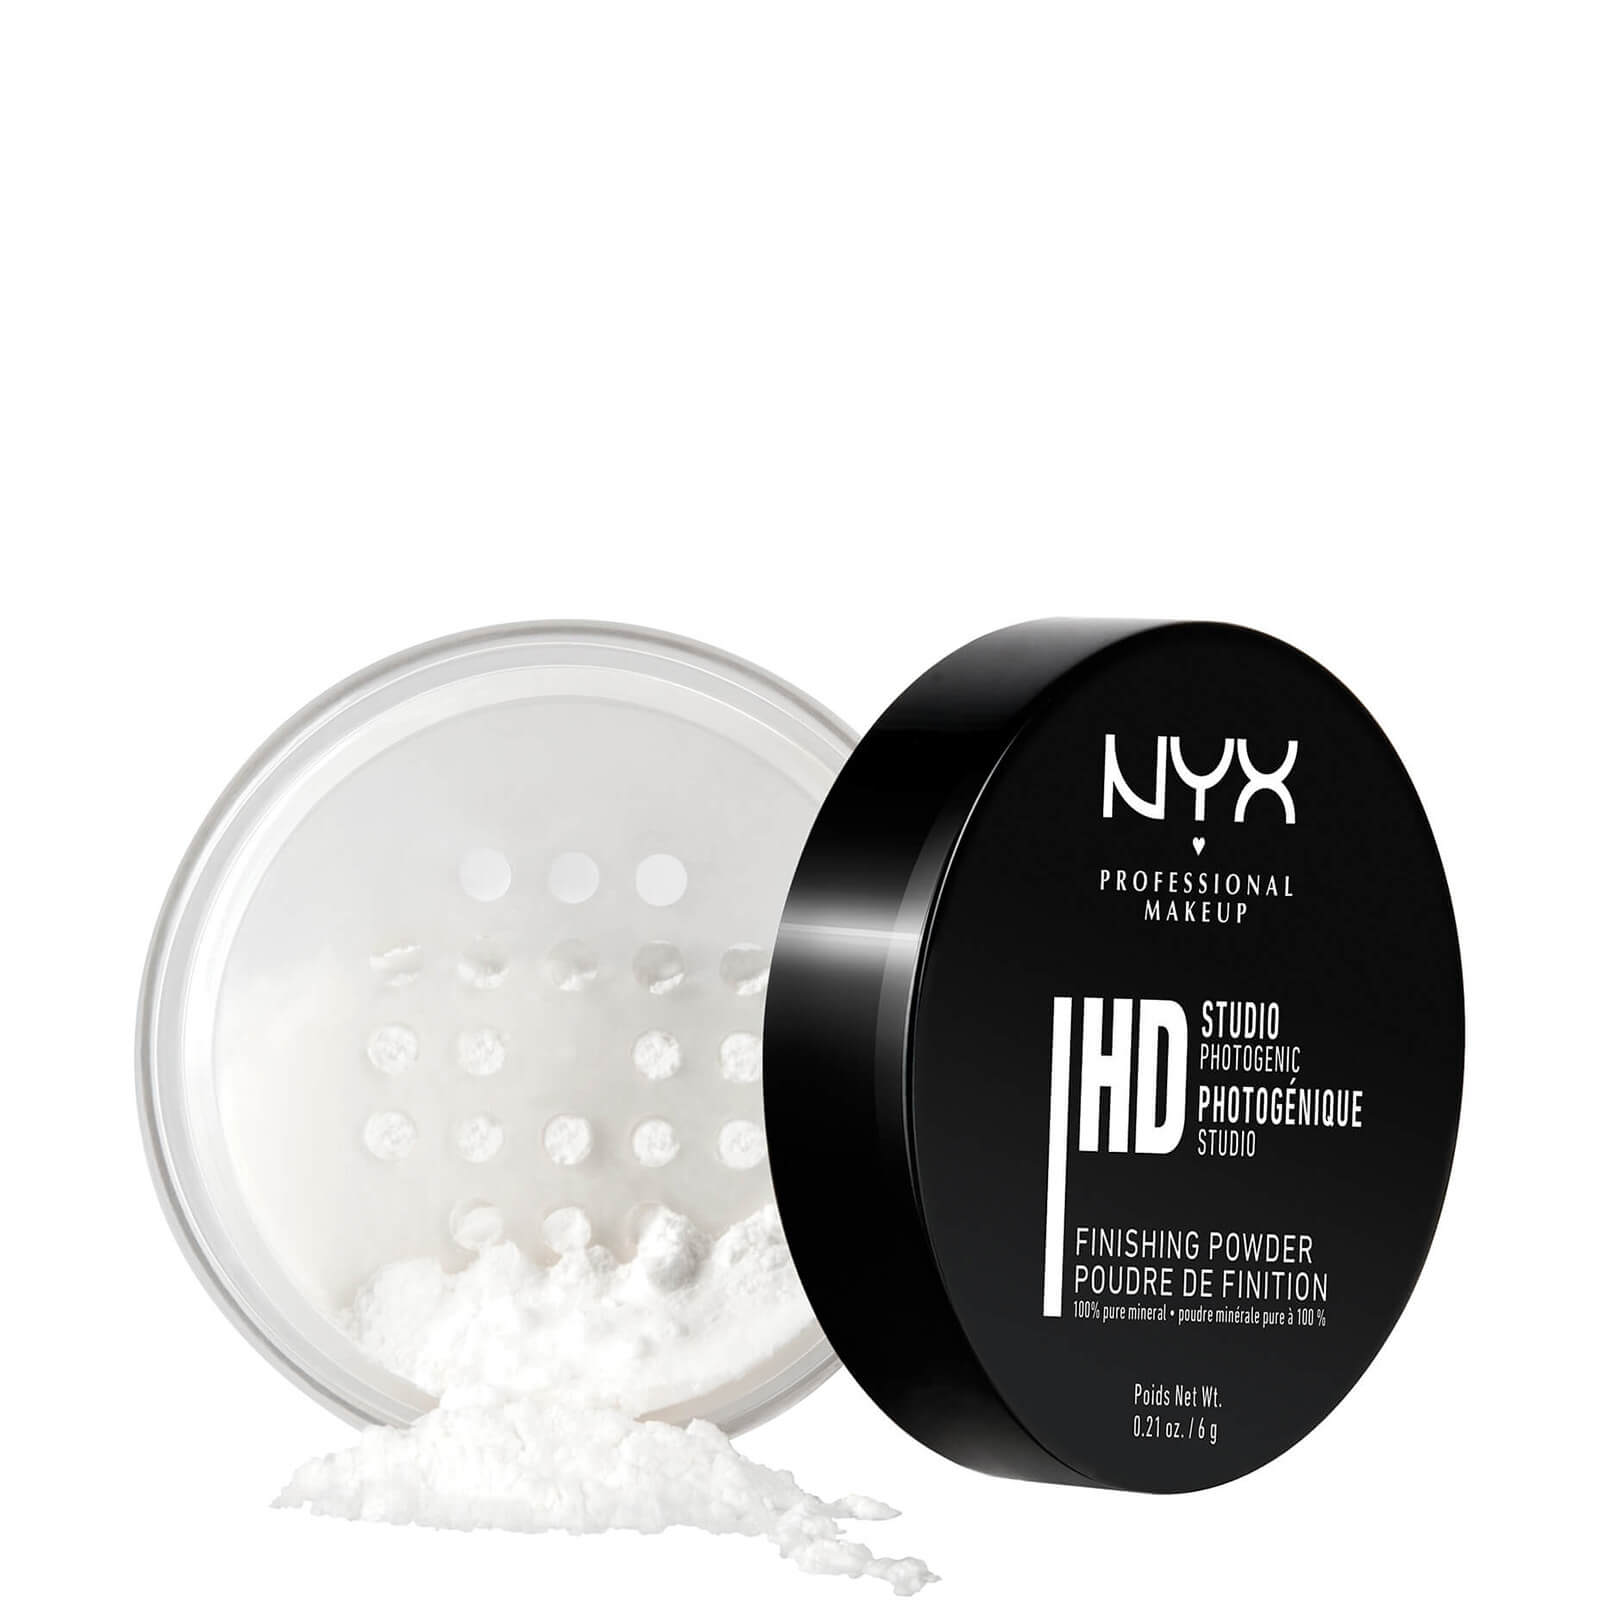 Image of NYX Professional Makeup Studio Finishing Powder - Translucent Finish